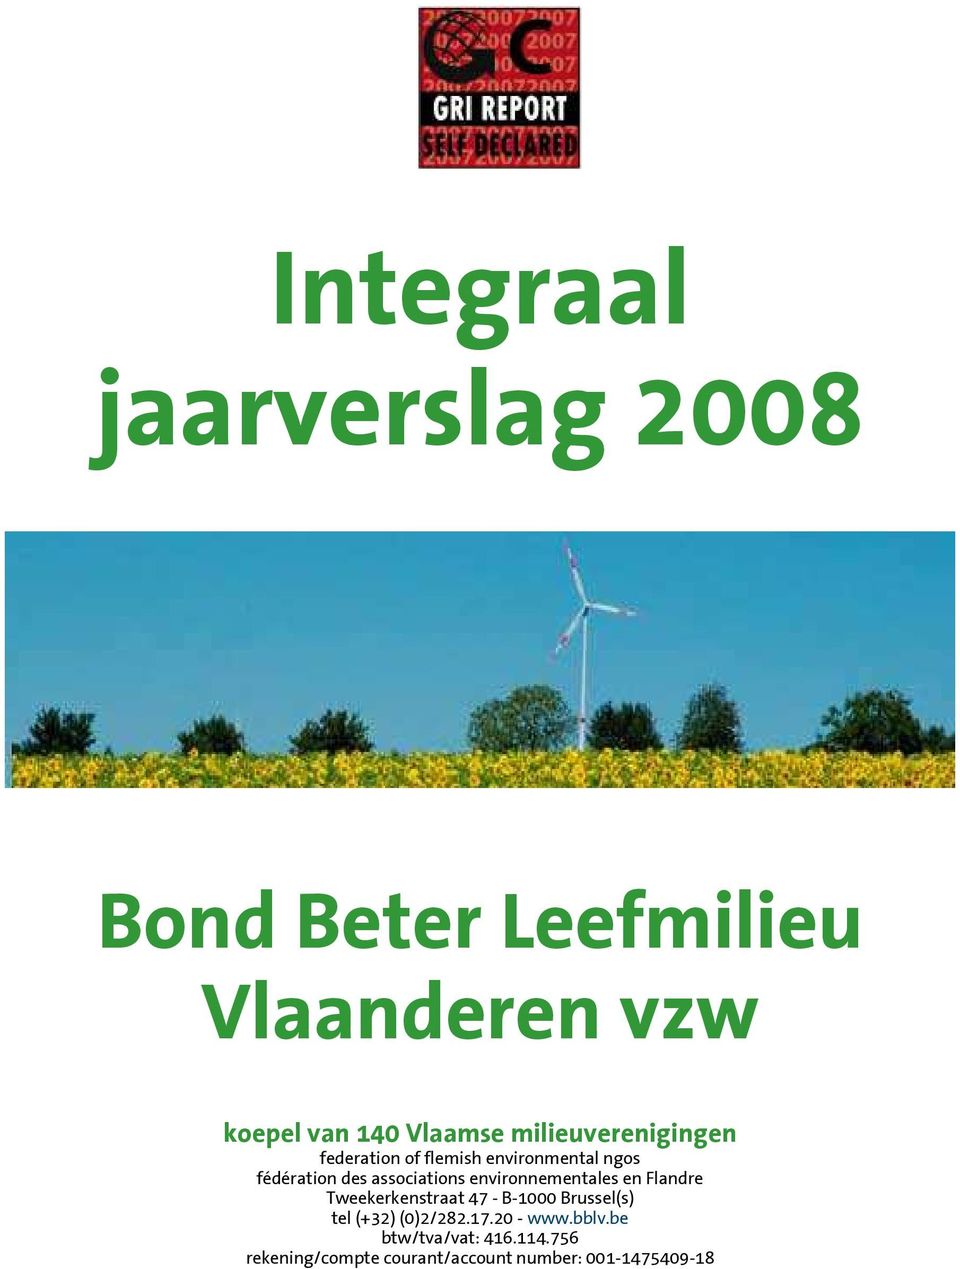 environnementales en Flandre Tweekerkenstraat 47 - B-1000 Brussel(s) tel (+32) (0)2/282.17.